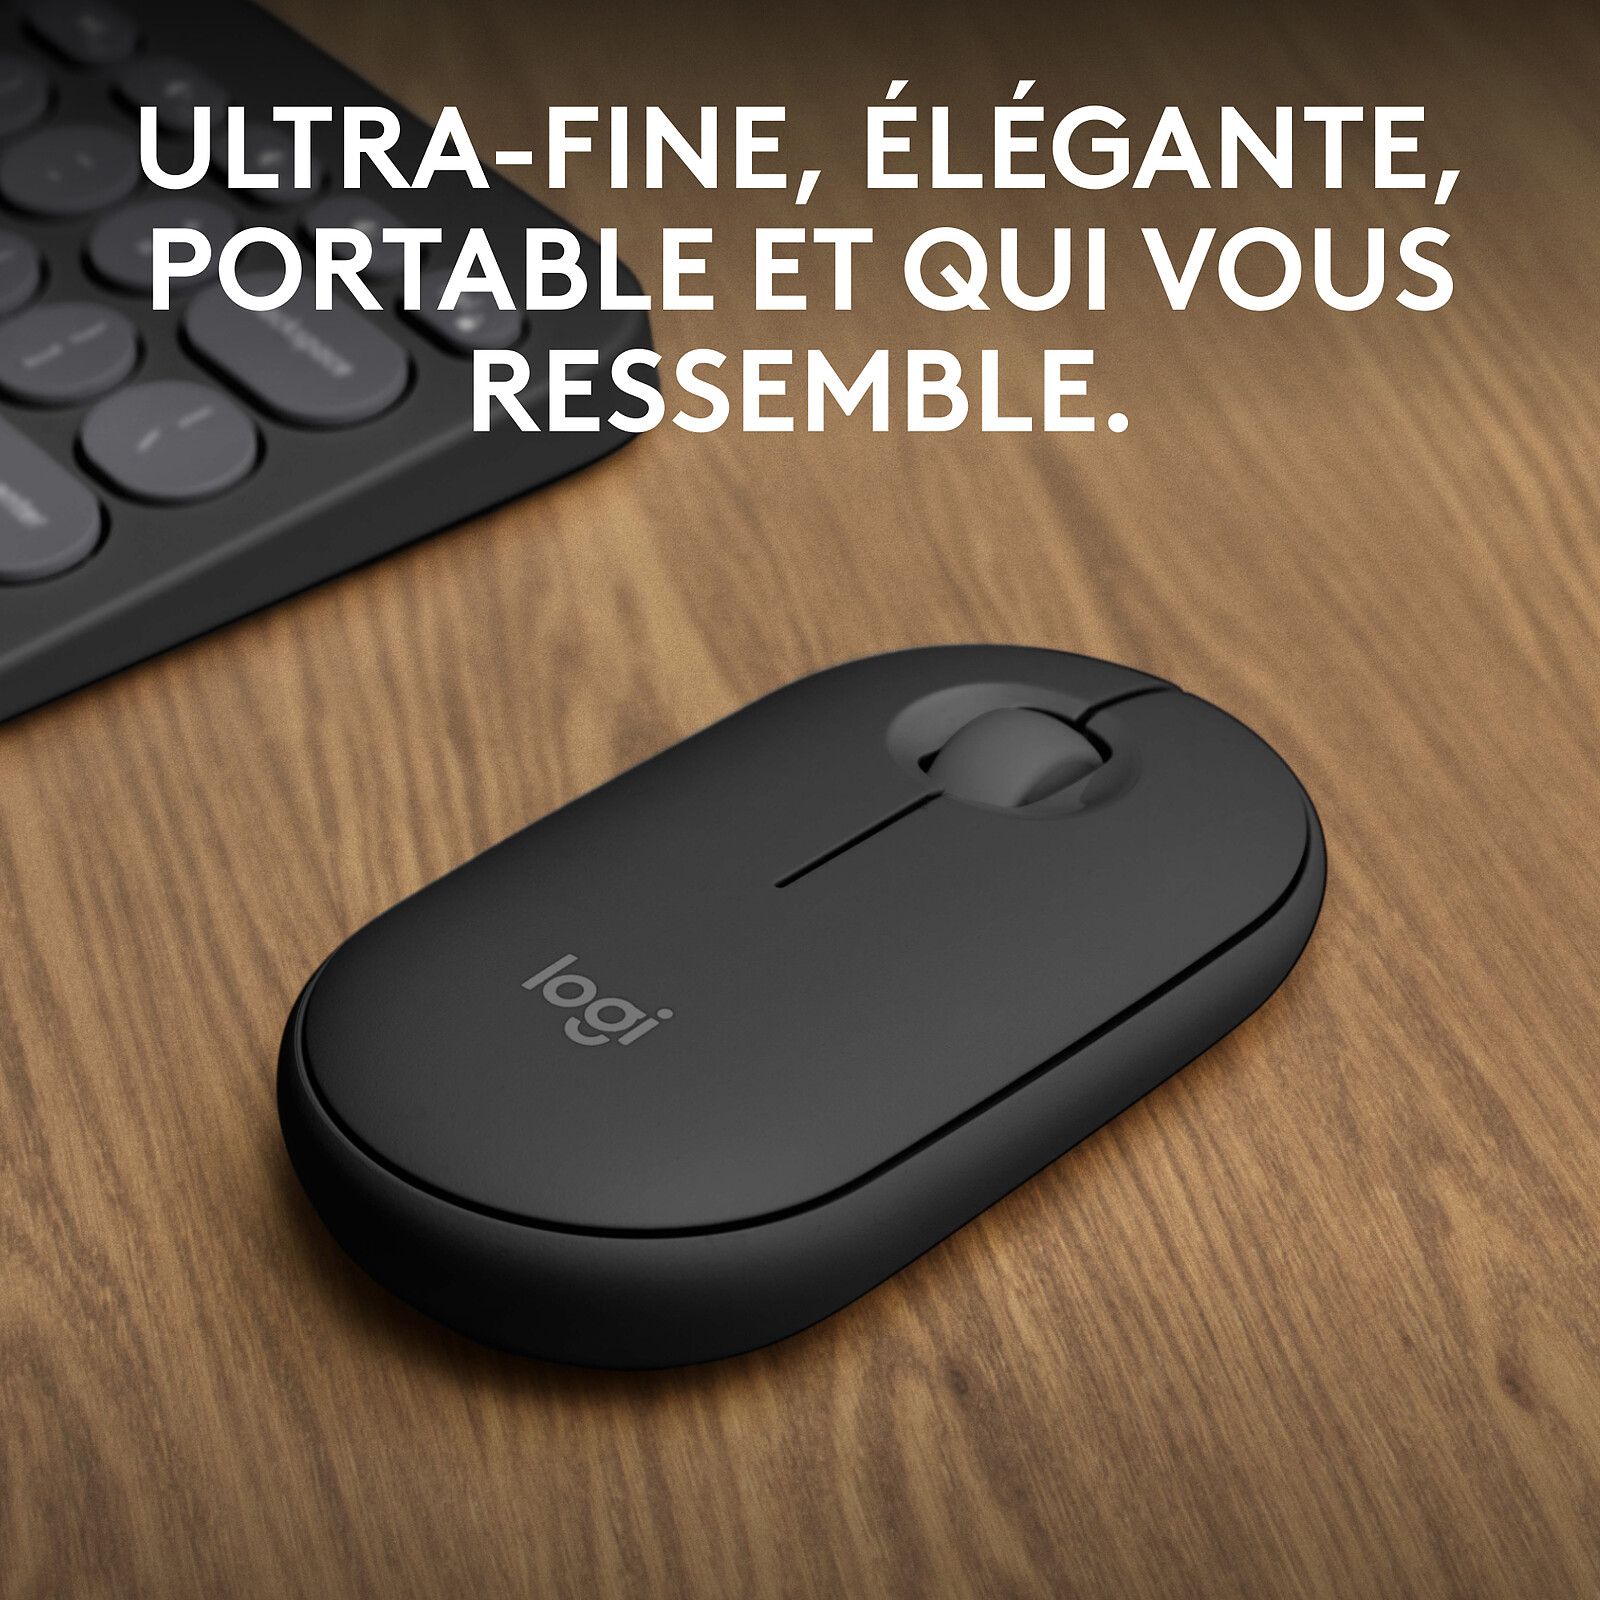 Microsoft Surface Precision Mouse Noir - Souris PC - Garantie 3 ans LDLC